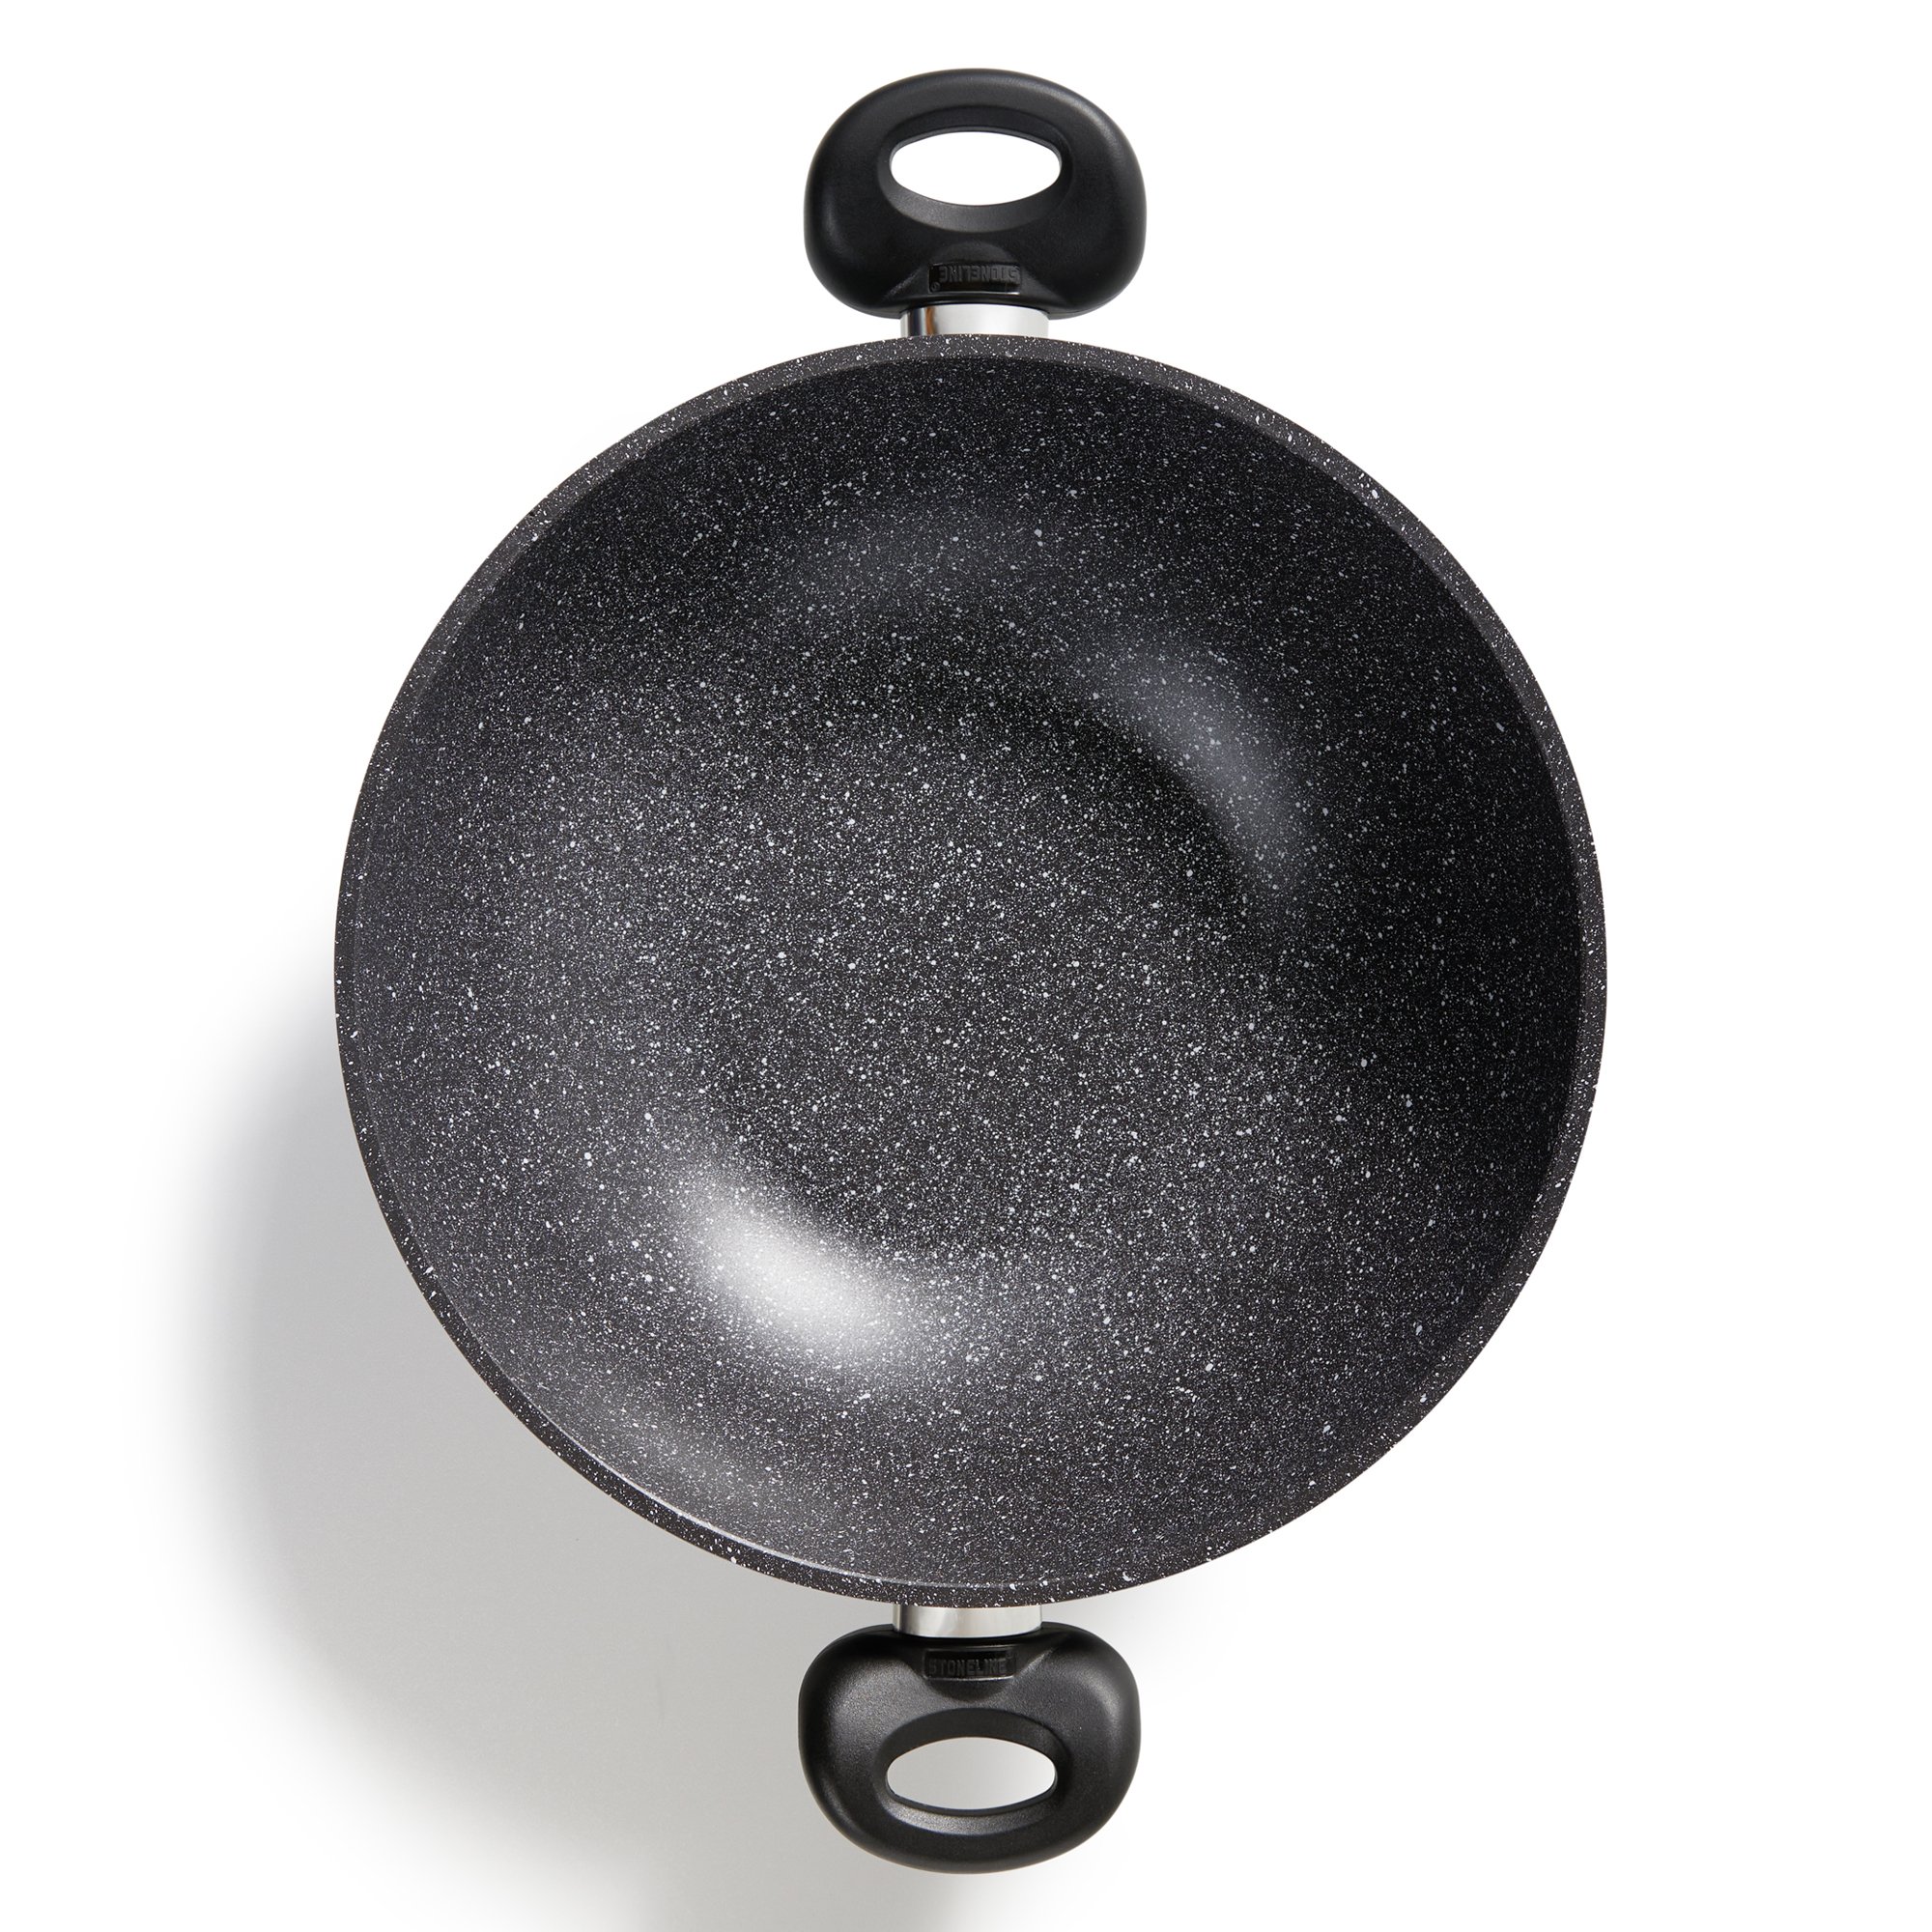 STONELINE® Wok 28 cm, con coperchio, padella wok in alluminio rivestita, adatta al forno e all'induzione